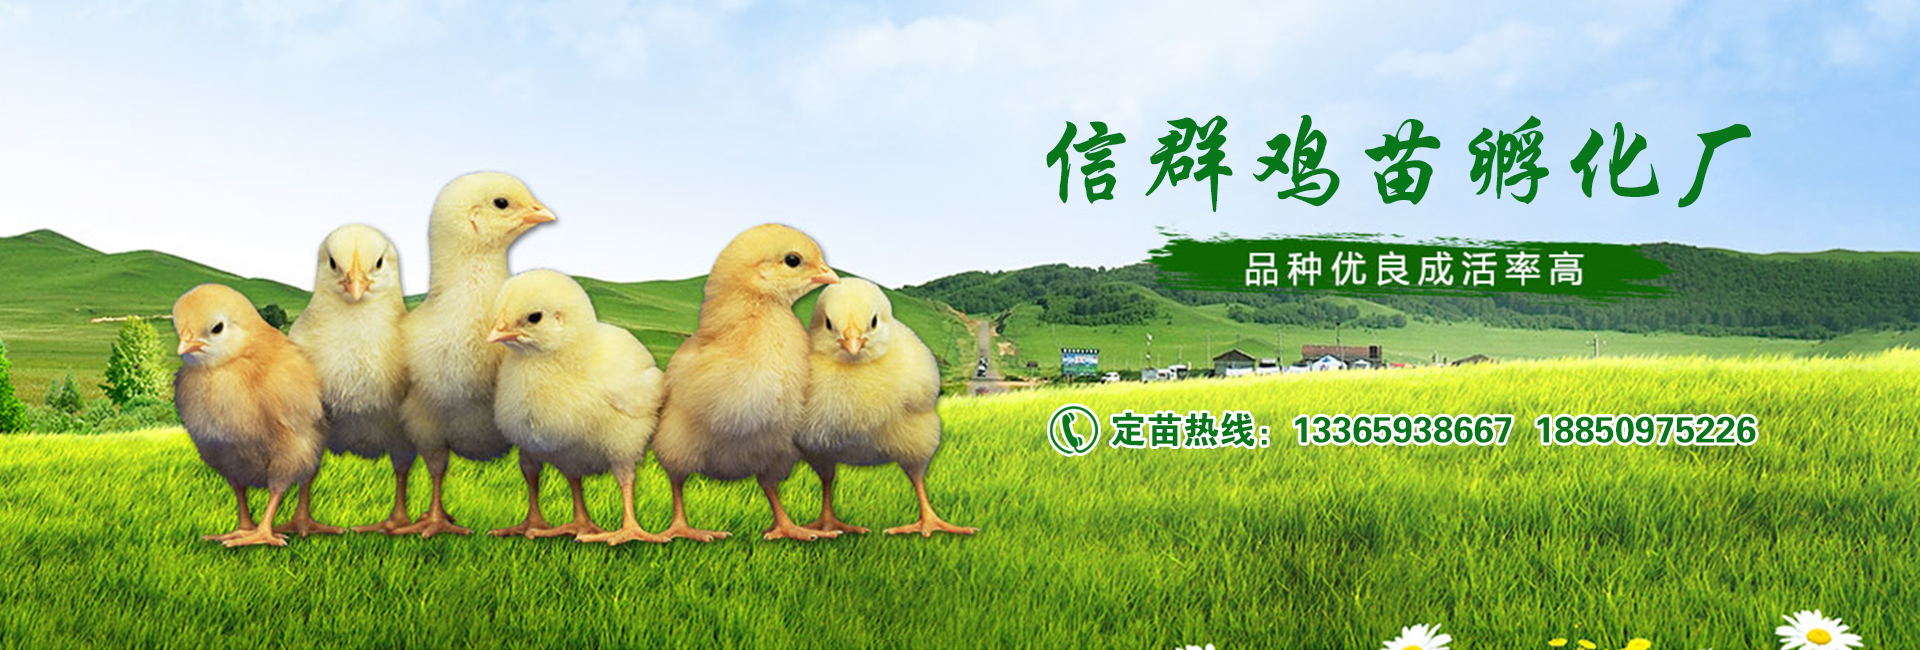 饲料添加剂对禽类的影响